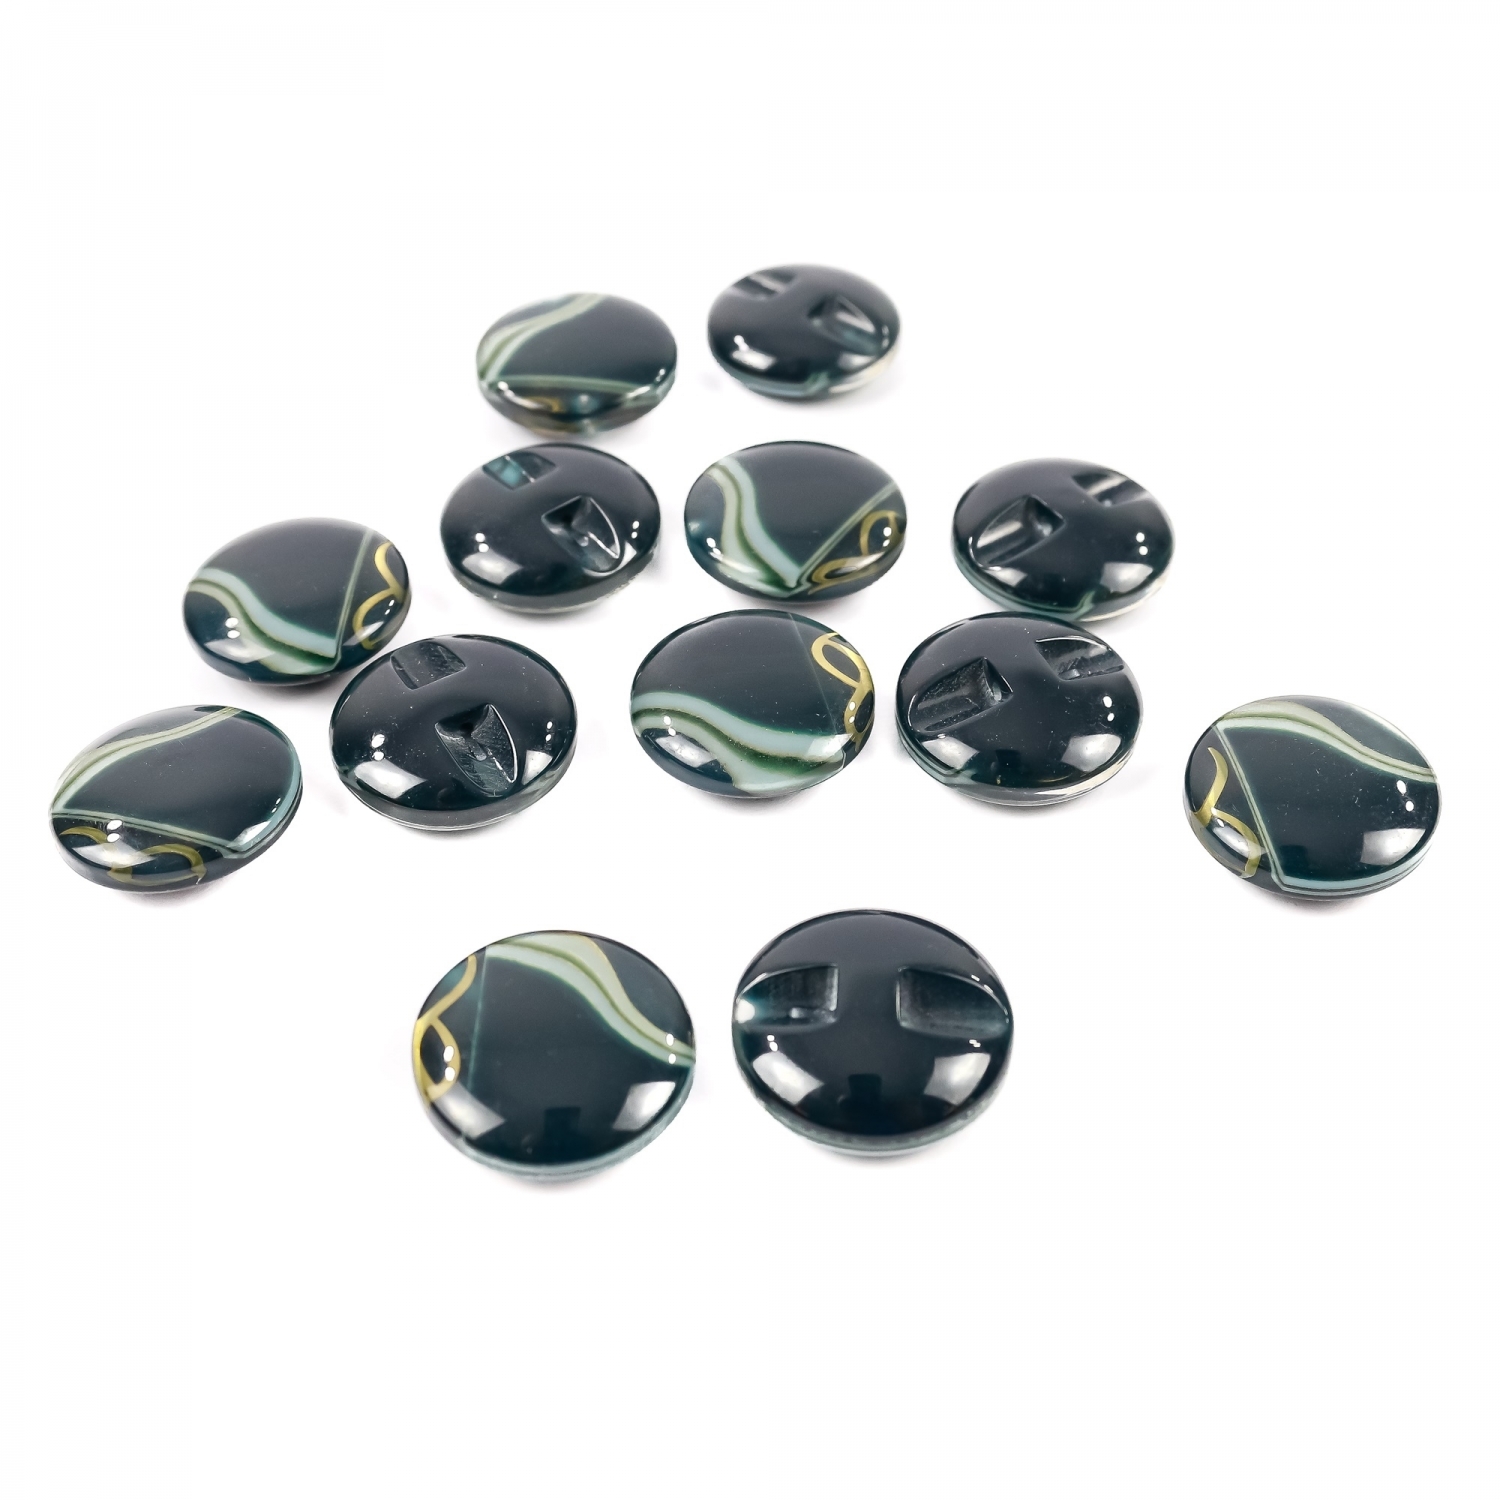 Plastic Shank Buttons, Size: 34L (100 pcs/pack)Code: 0311-1250/34